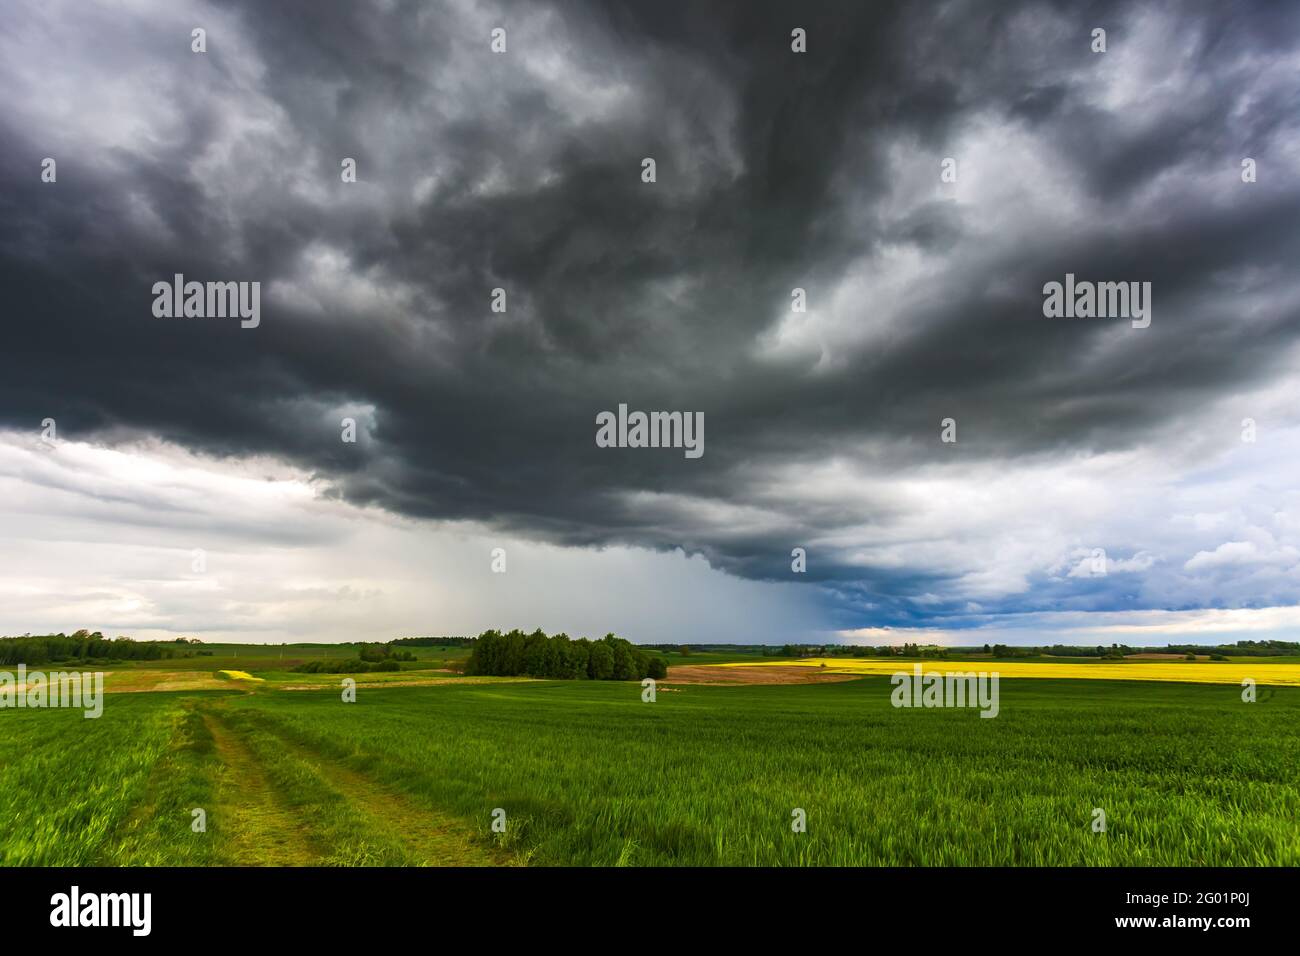 Nuages orageux, paysage avec nuages orageux Banque D'Images